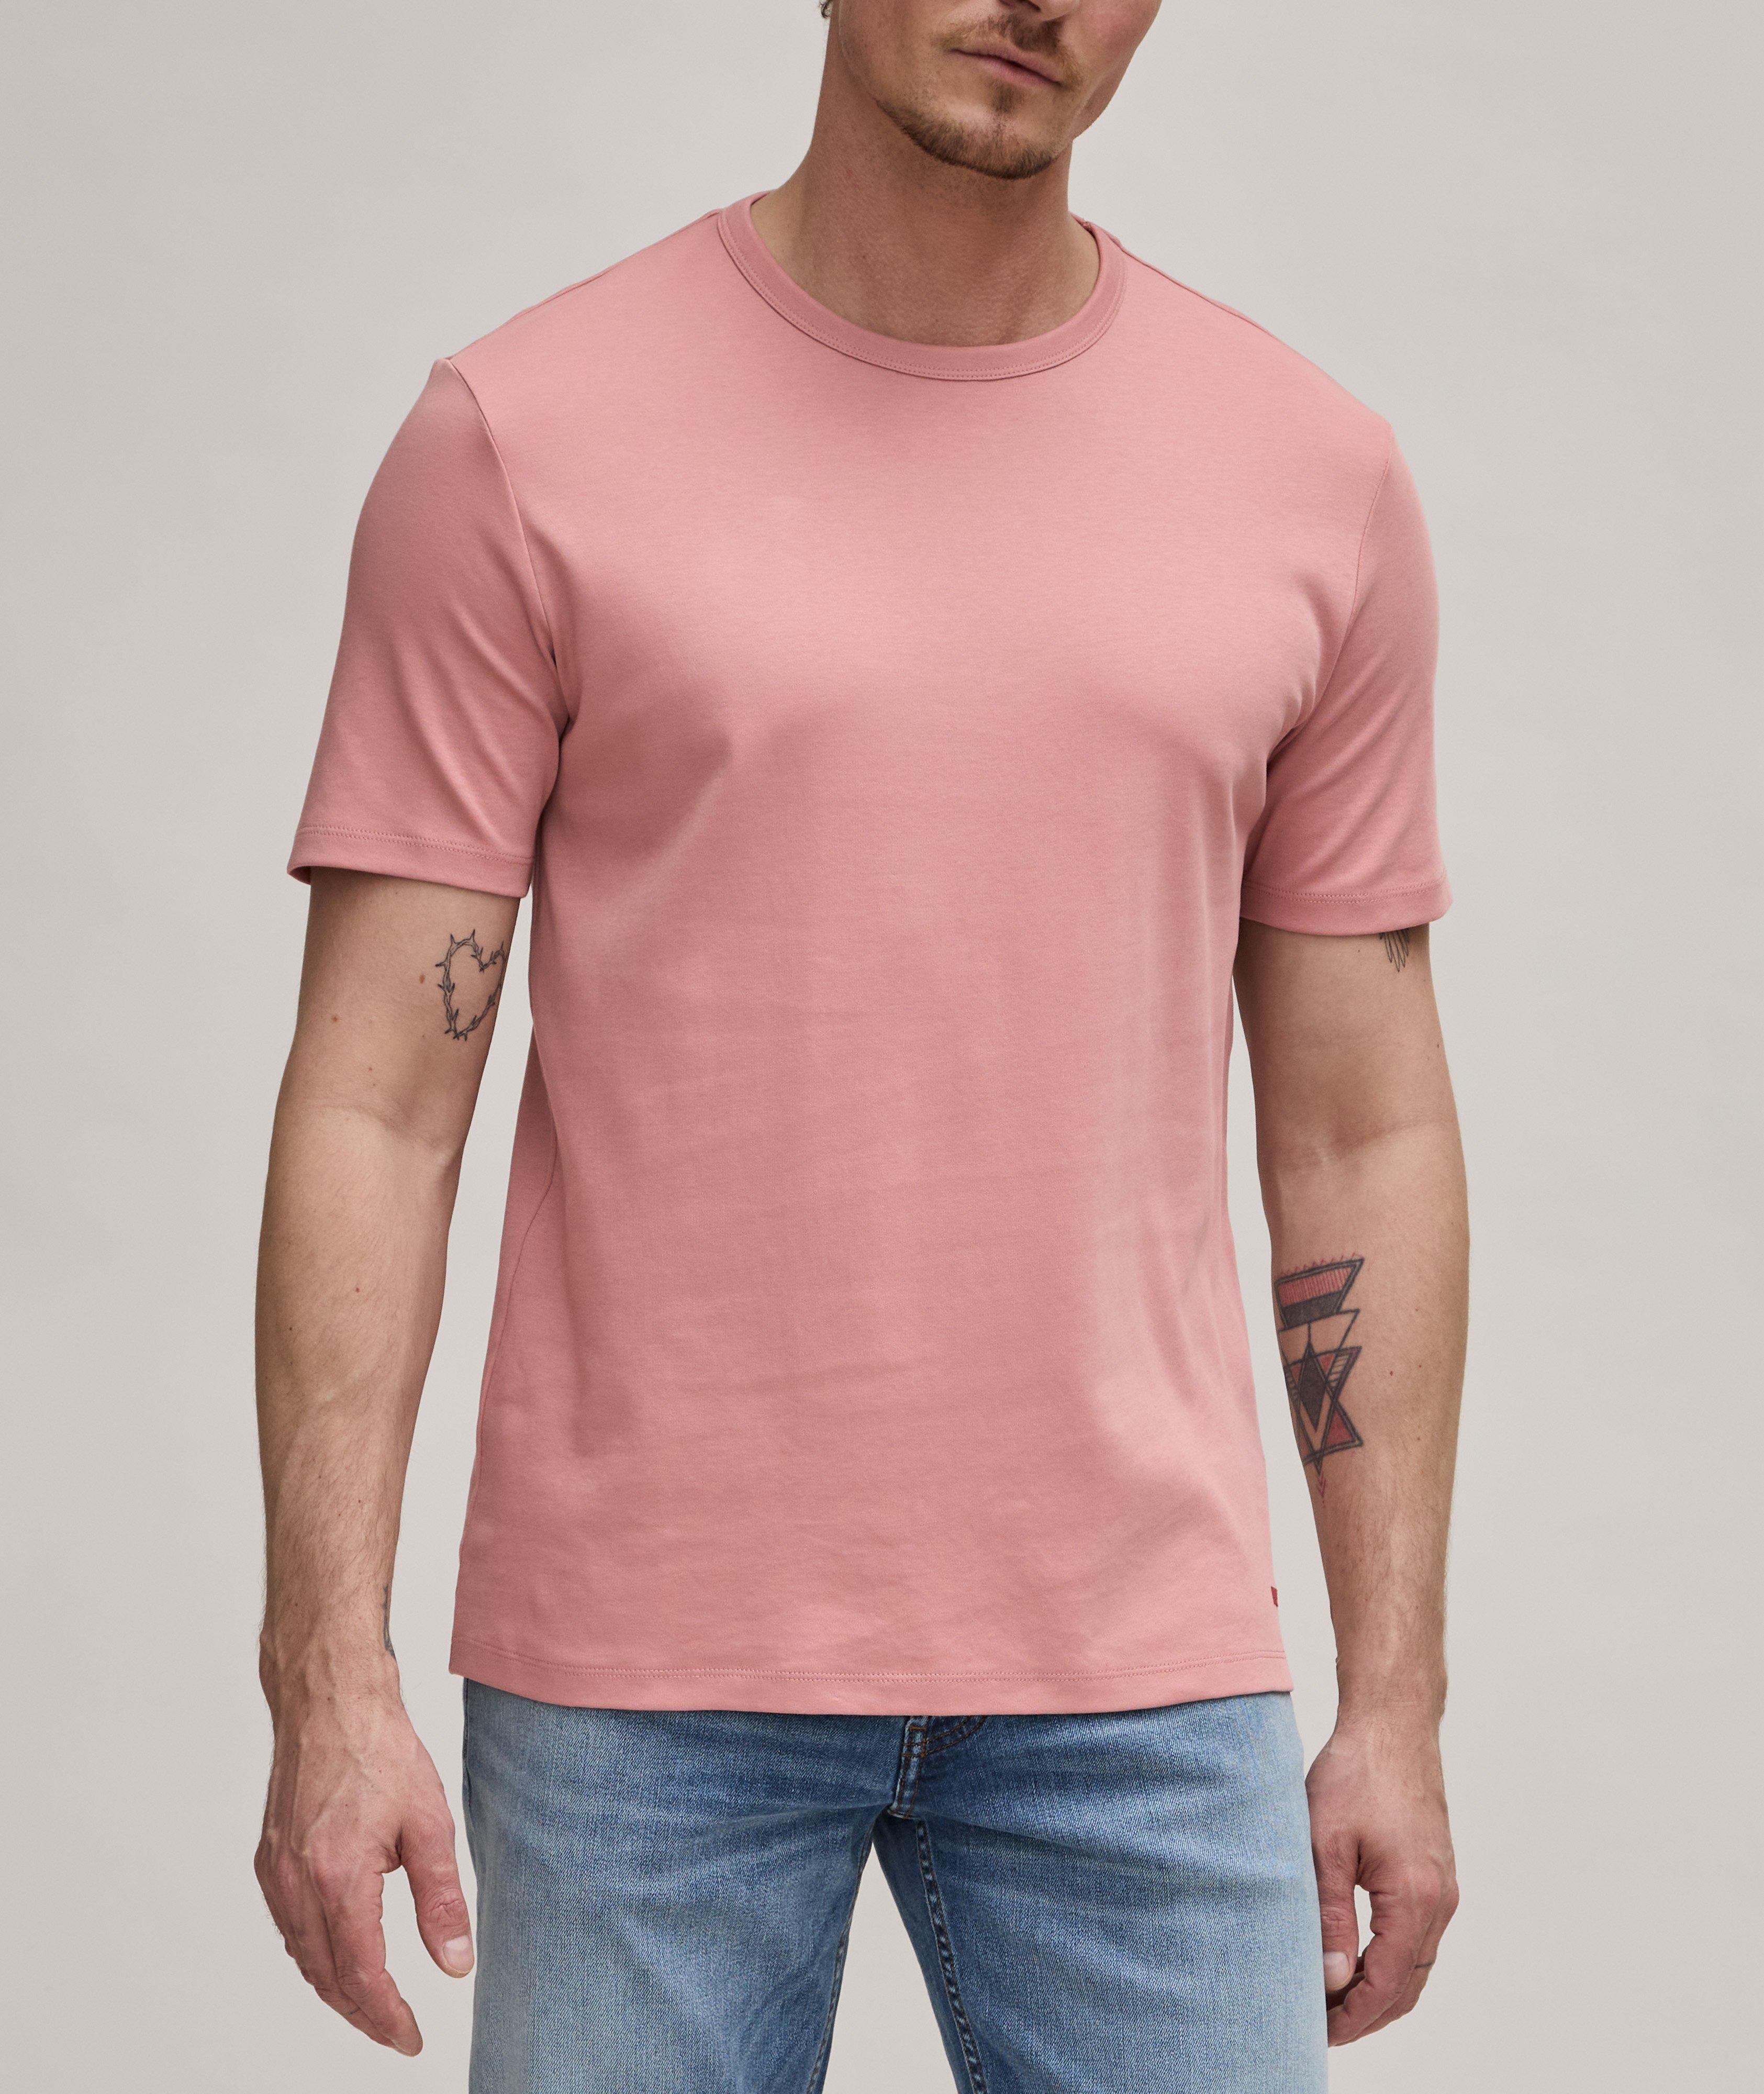 Dozy Cotton T-Shirt image 1